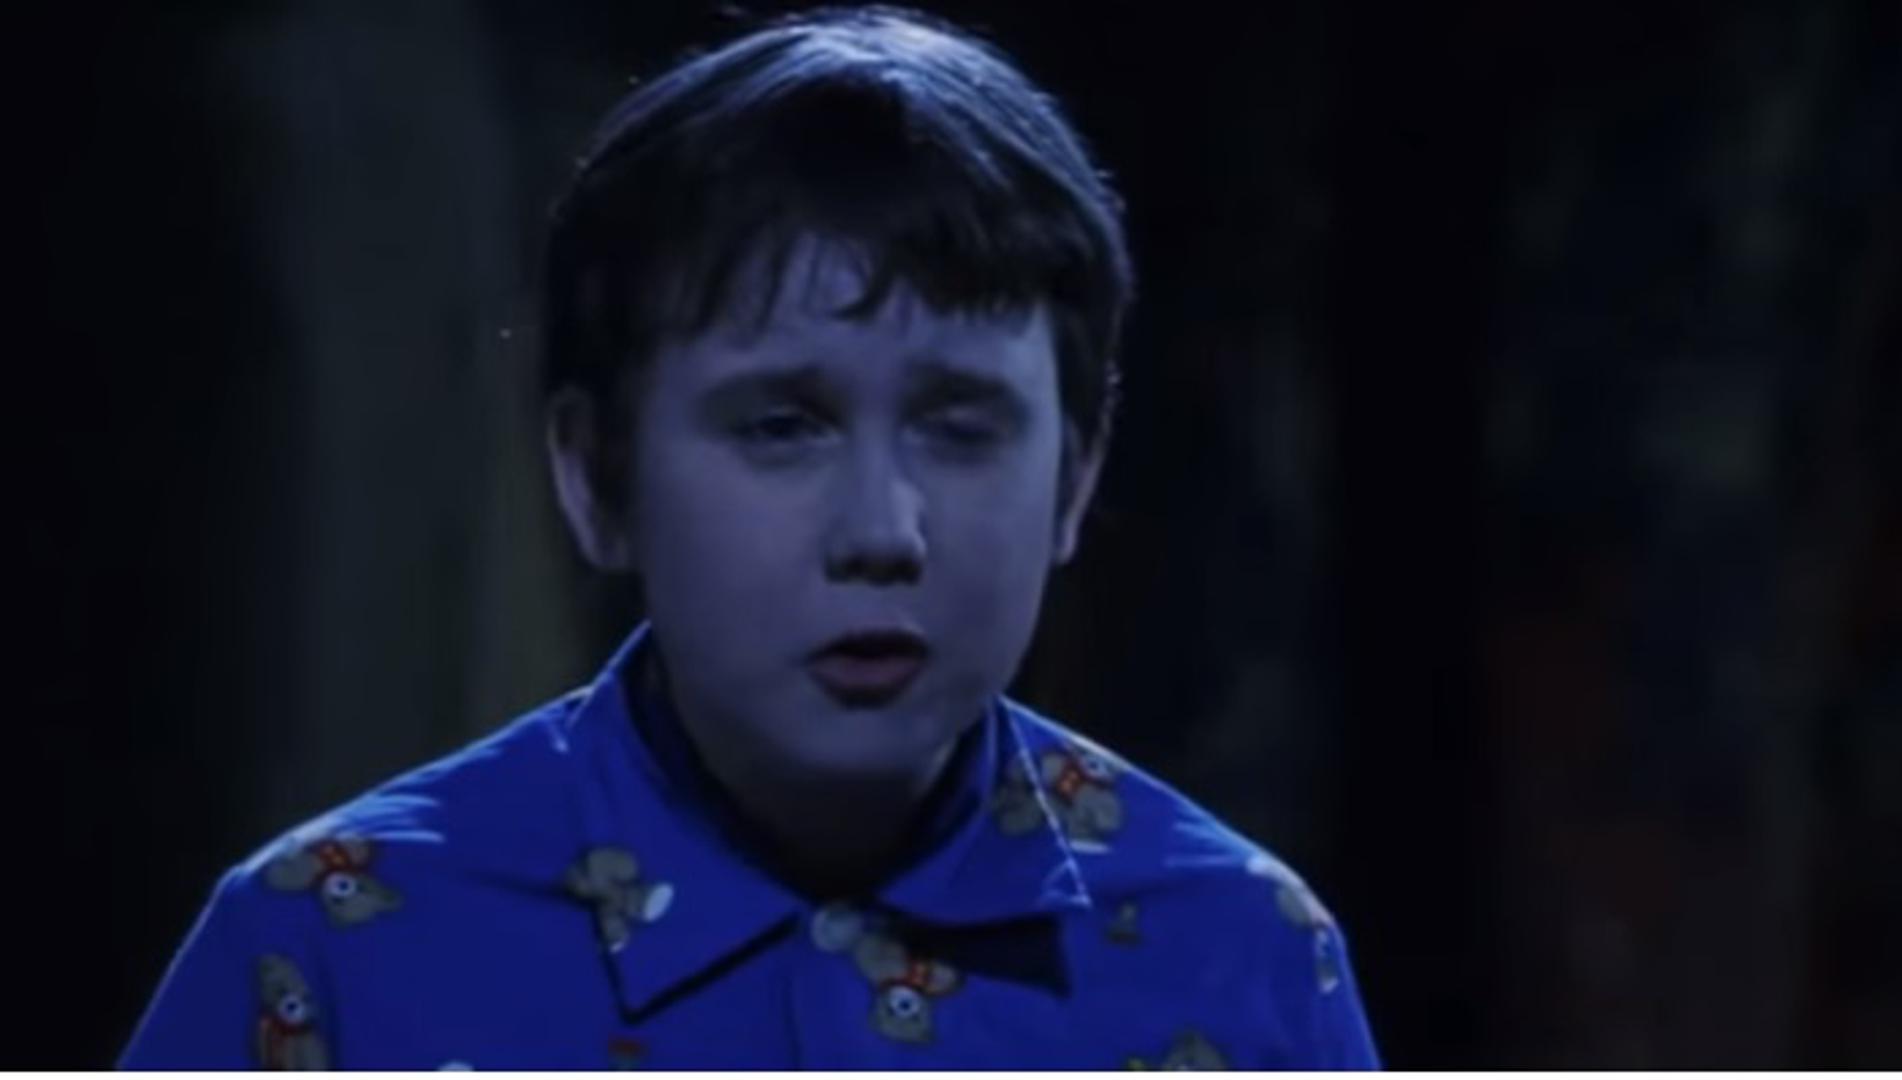 Bucmasti i smotani mali čarobnjak Neville Longbottom bio je prijatelj Harryja Pottera, a u filmovima o ovom najpoznatijem čarobnjaku utjelovio ga je glumac Matthew Lewis.